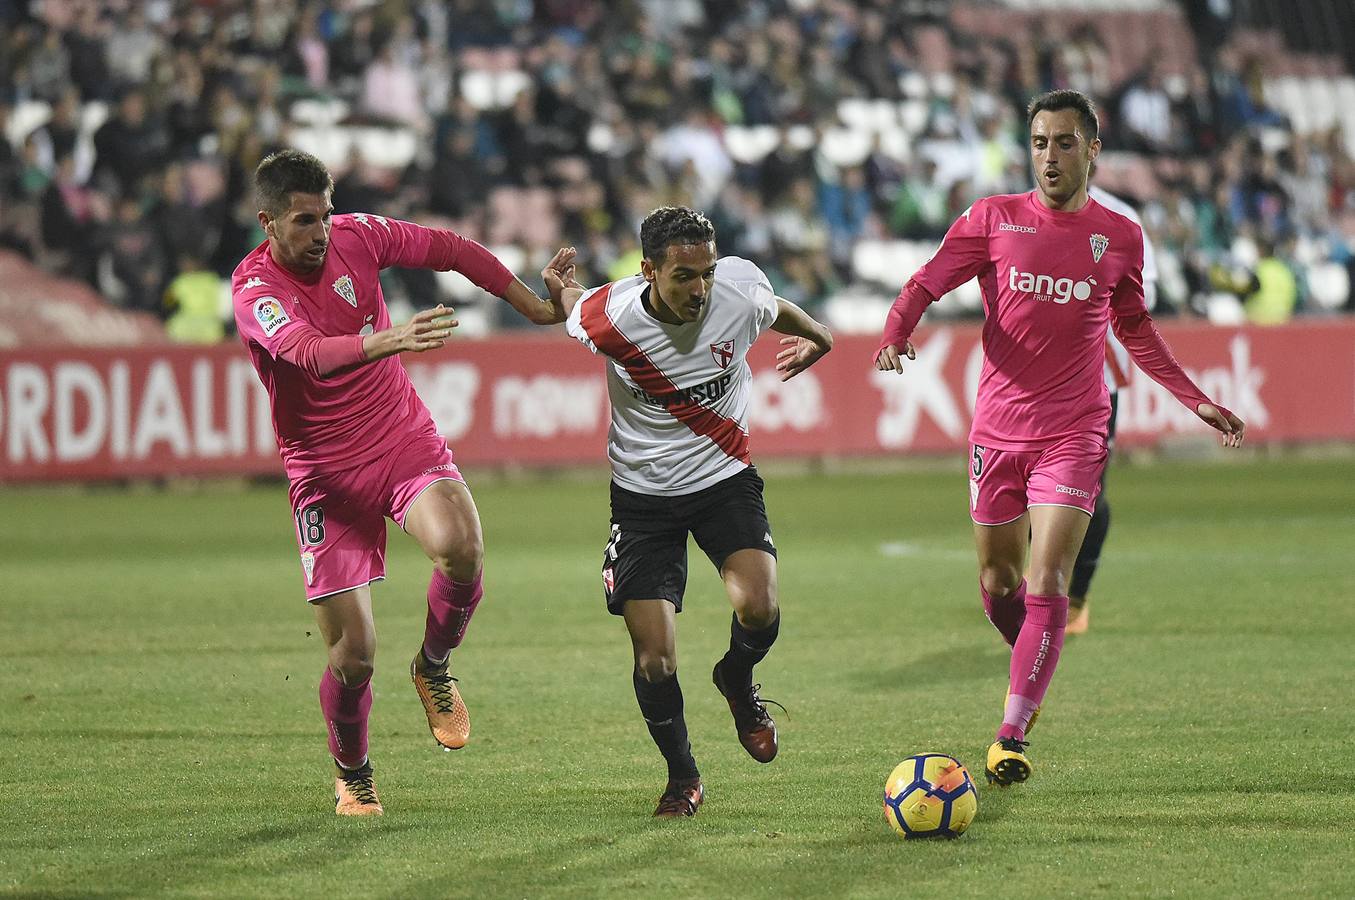 Boutobba del Sevilla Atlético ante el Córdoba CF